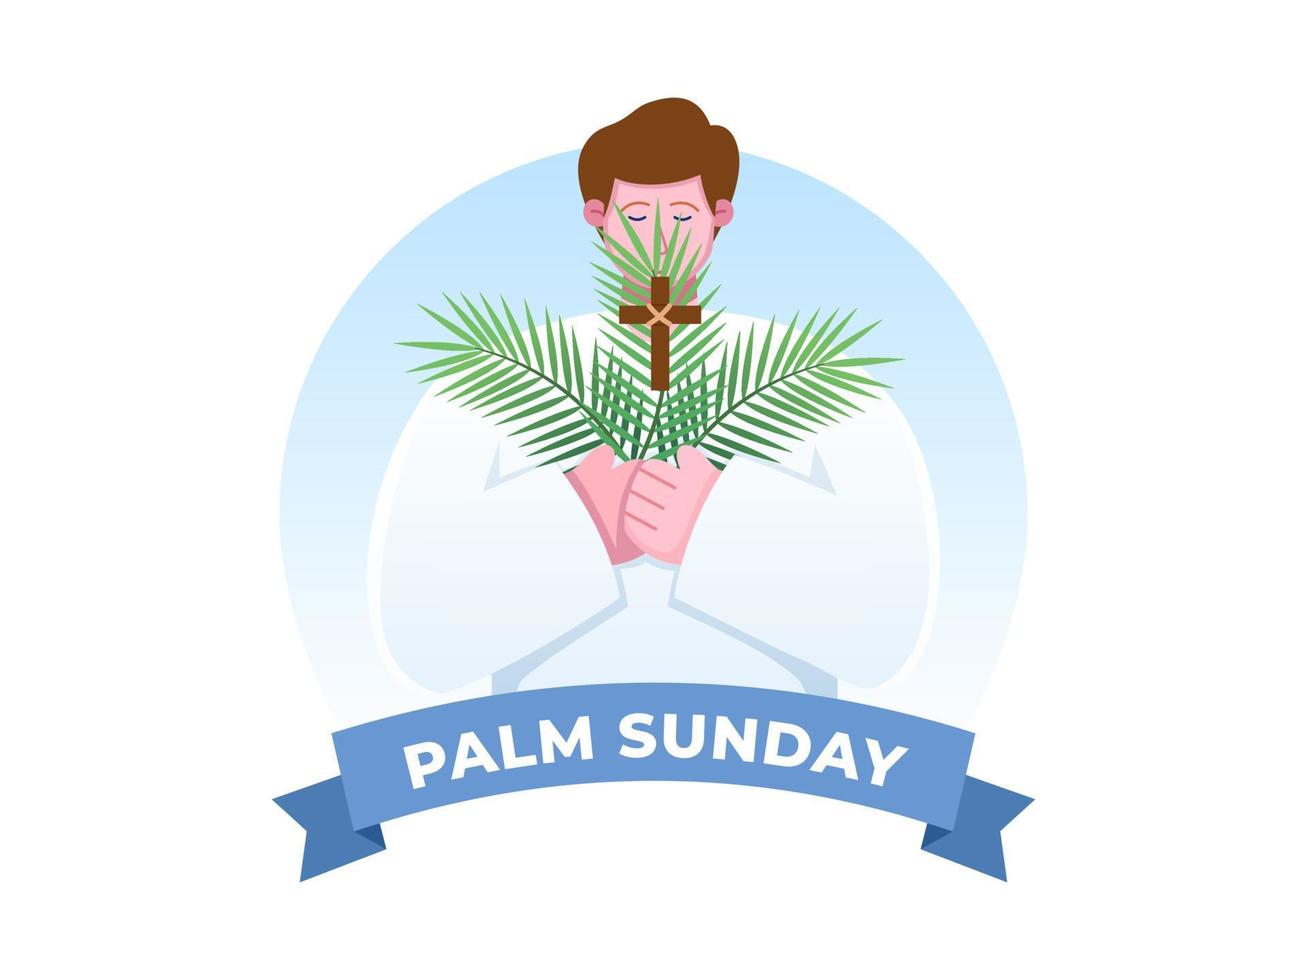 Religionsfeiertag Palmsonntag vor Ostern. glückliche menschen mit palmenblättern vektorillustration. kann für Grußkarten, Postkarten, Banner, Poster, Web, Druck, Buch, Animation usw. verwendet werden vektor